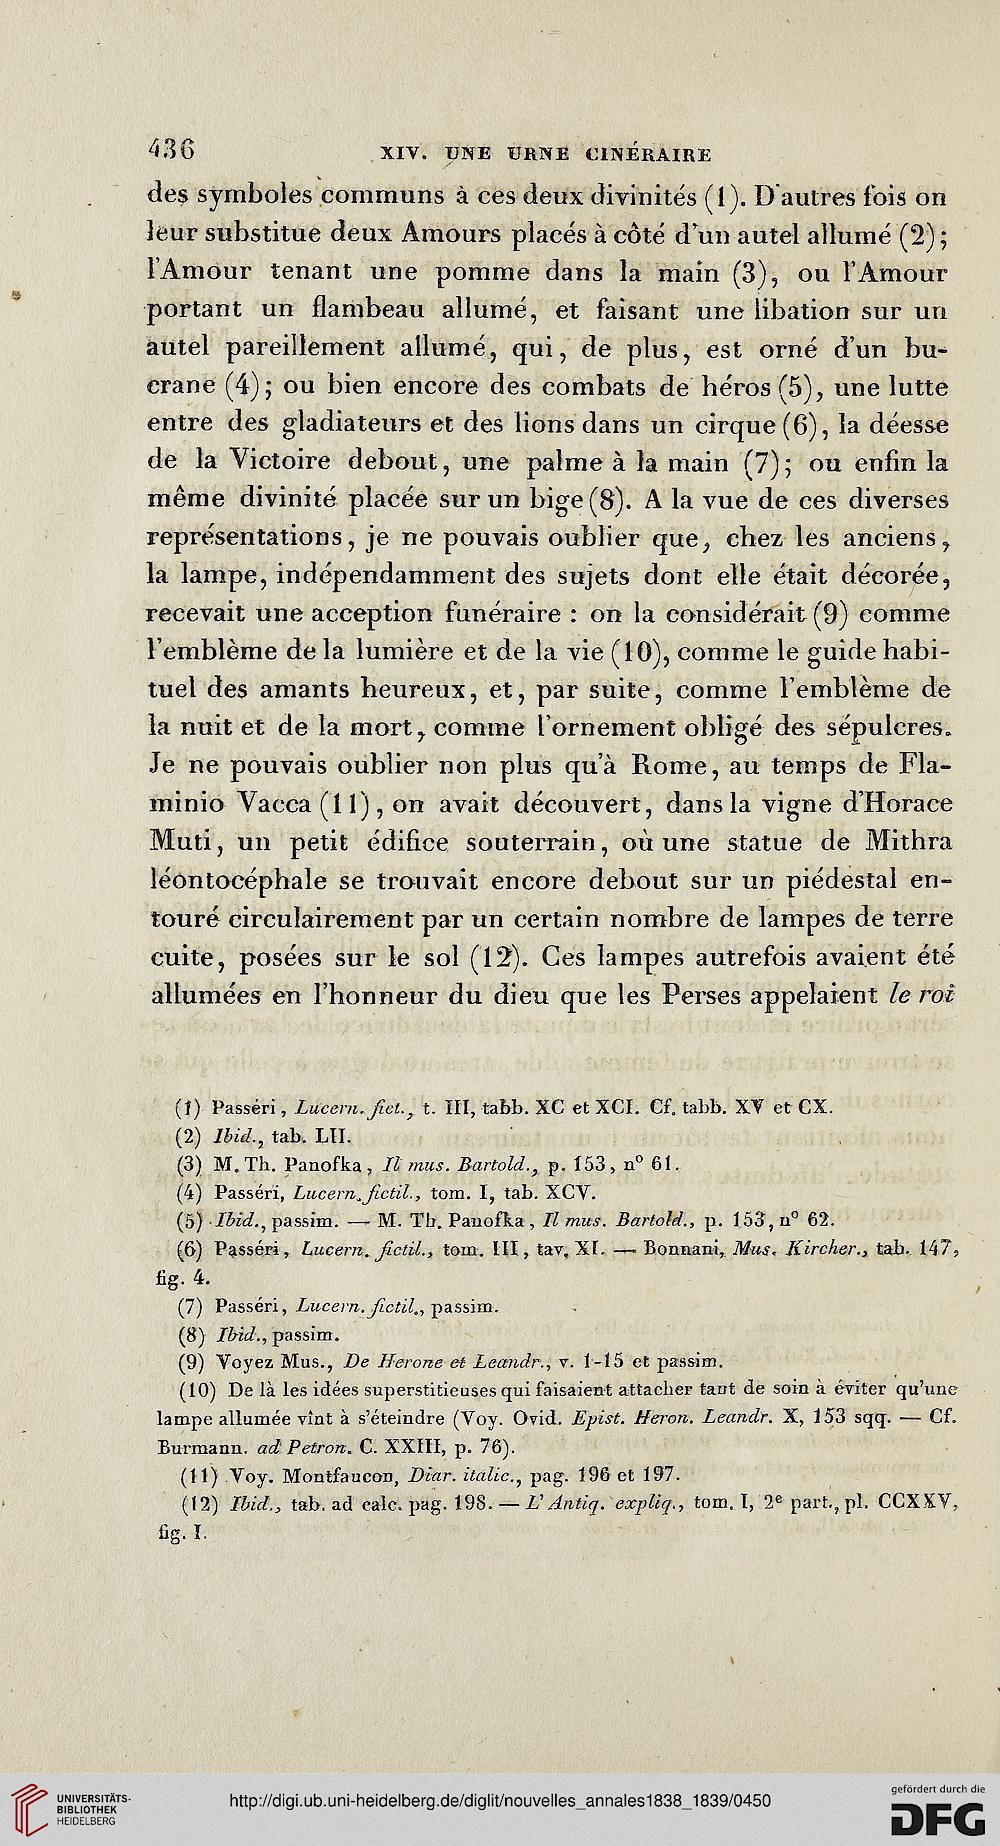 institut archeologique paris section francaise hrsg nouvelles annales 2 1838 1839